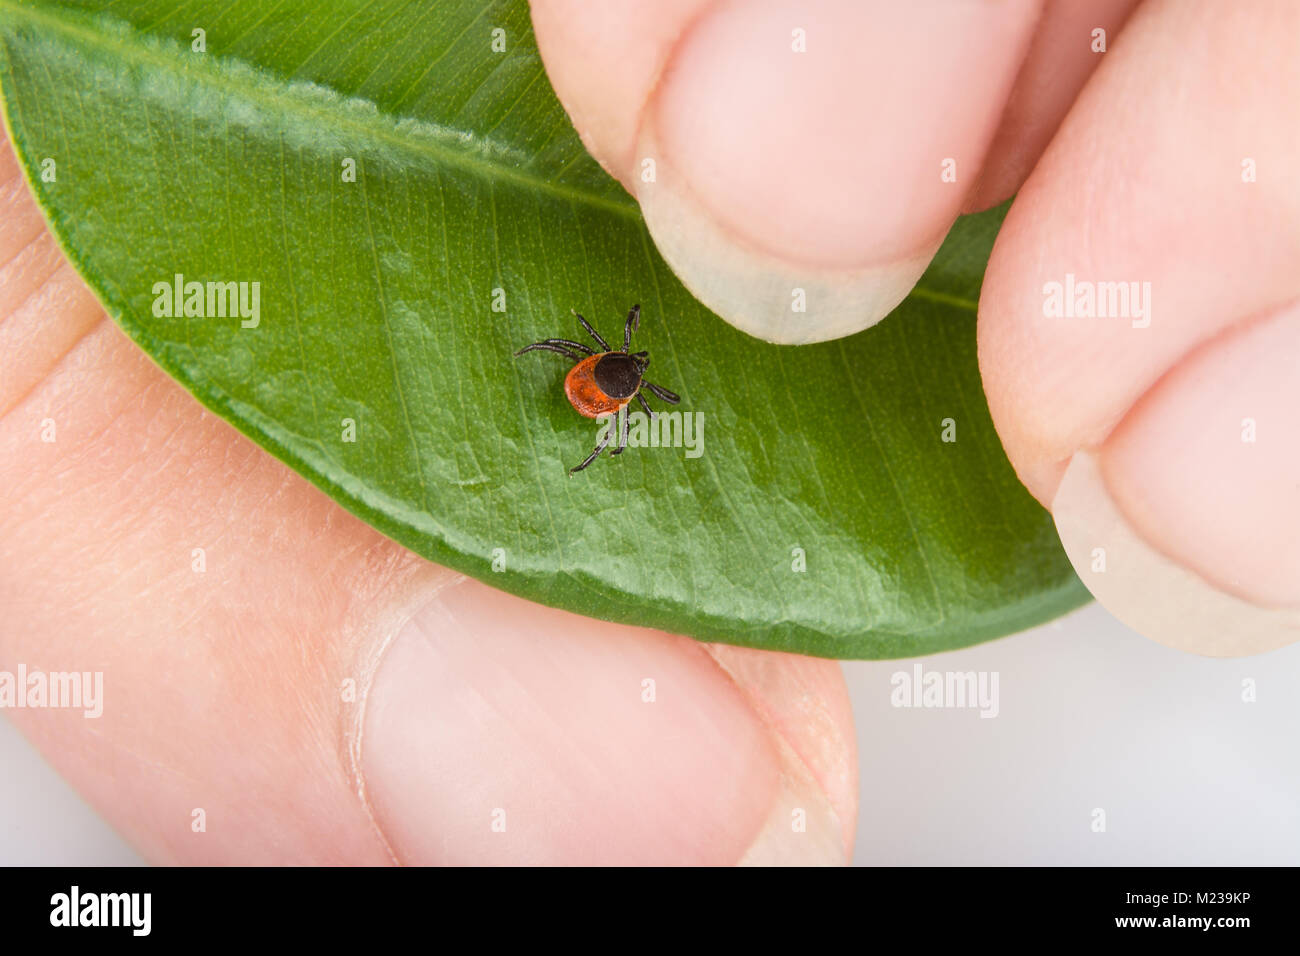 Castor bean Tick auf glänzenden grünen Blatt. Ixodes ricinus. Nahaufnahme der menschlichen Finger und gefährliche parasitäre Milben. Enzephalitis, Borreliose, Borreliose. Stockfoto